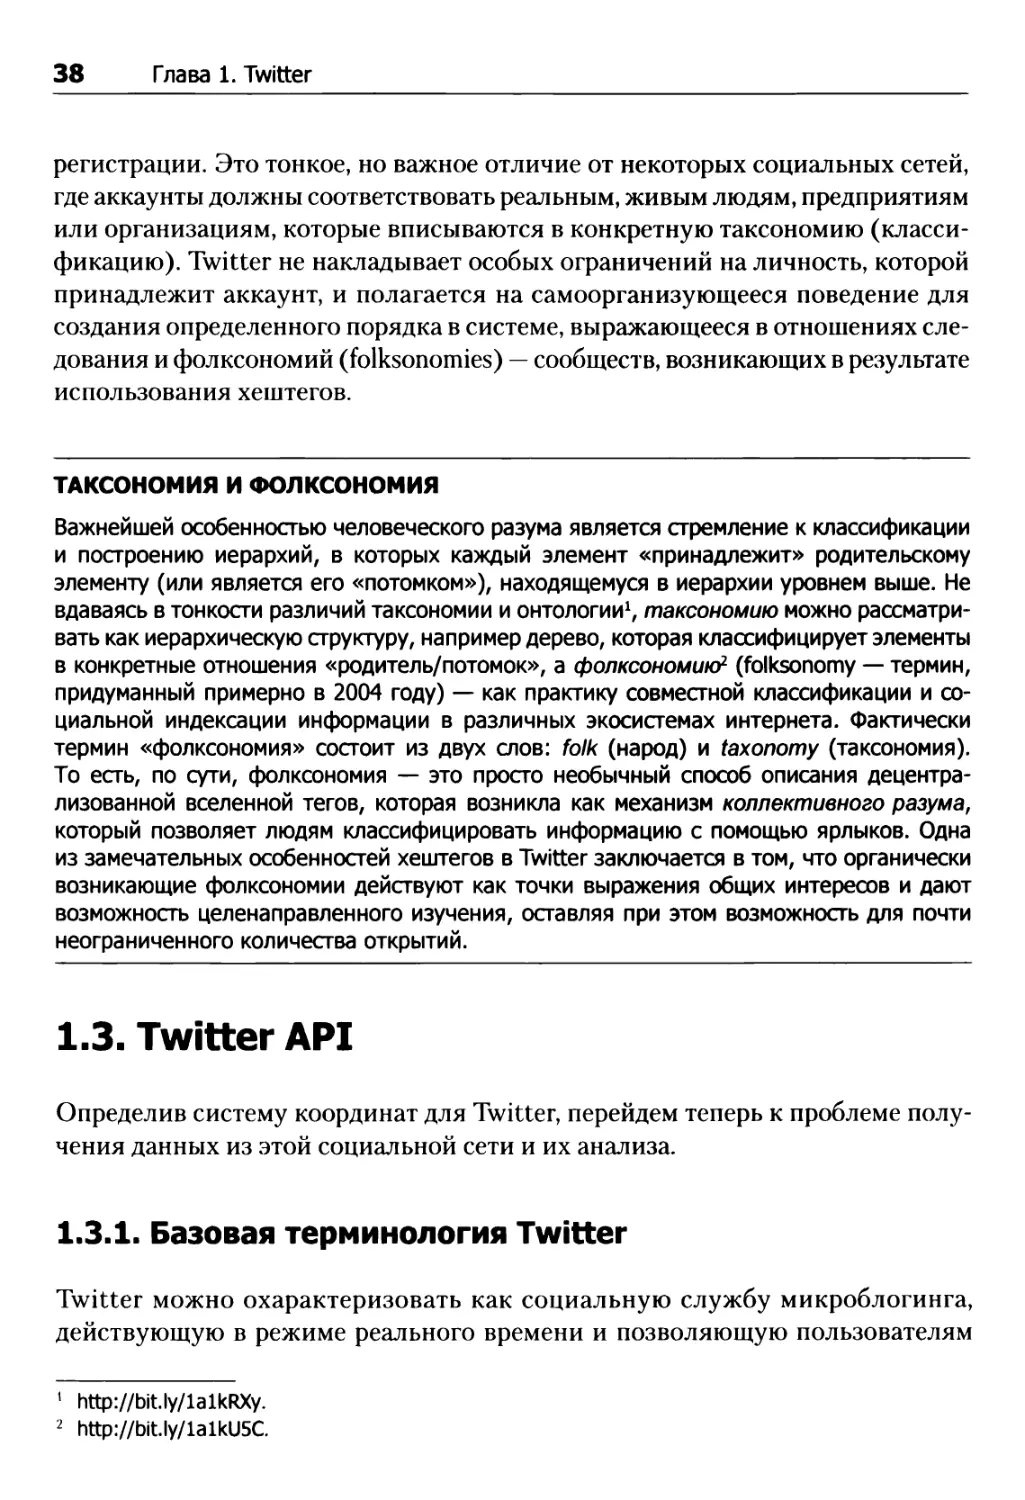 1.3. Twitter API
1.3.1. Базовая терминология Twitter